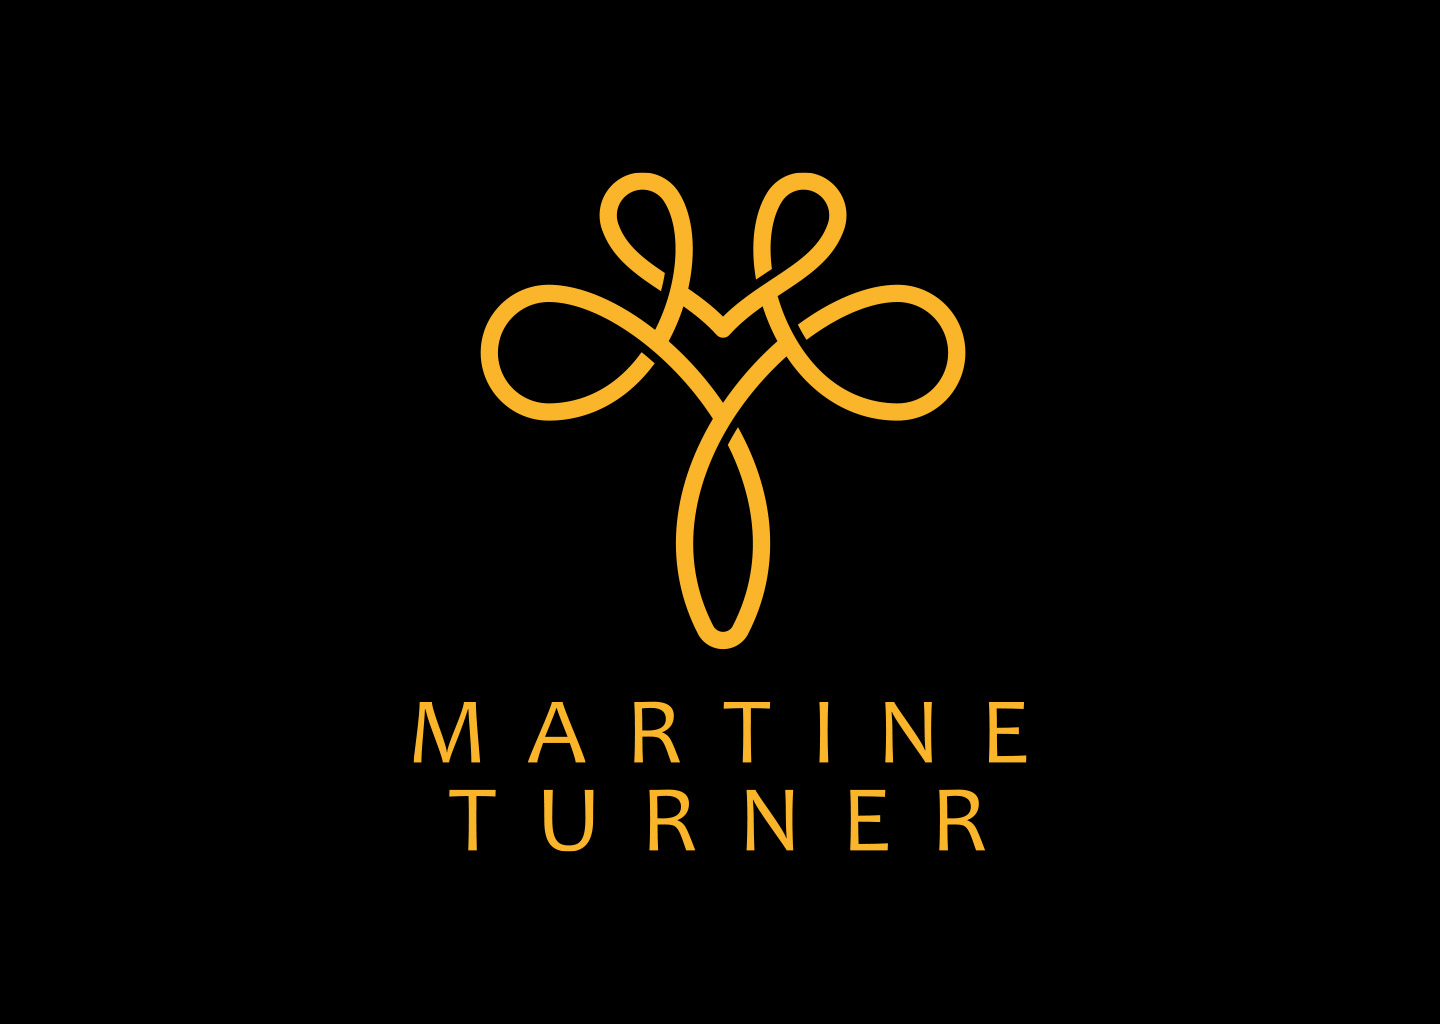 Martine Turner_port 01